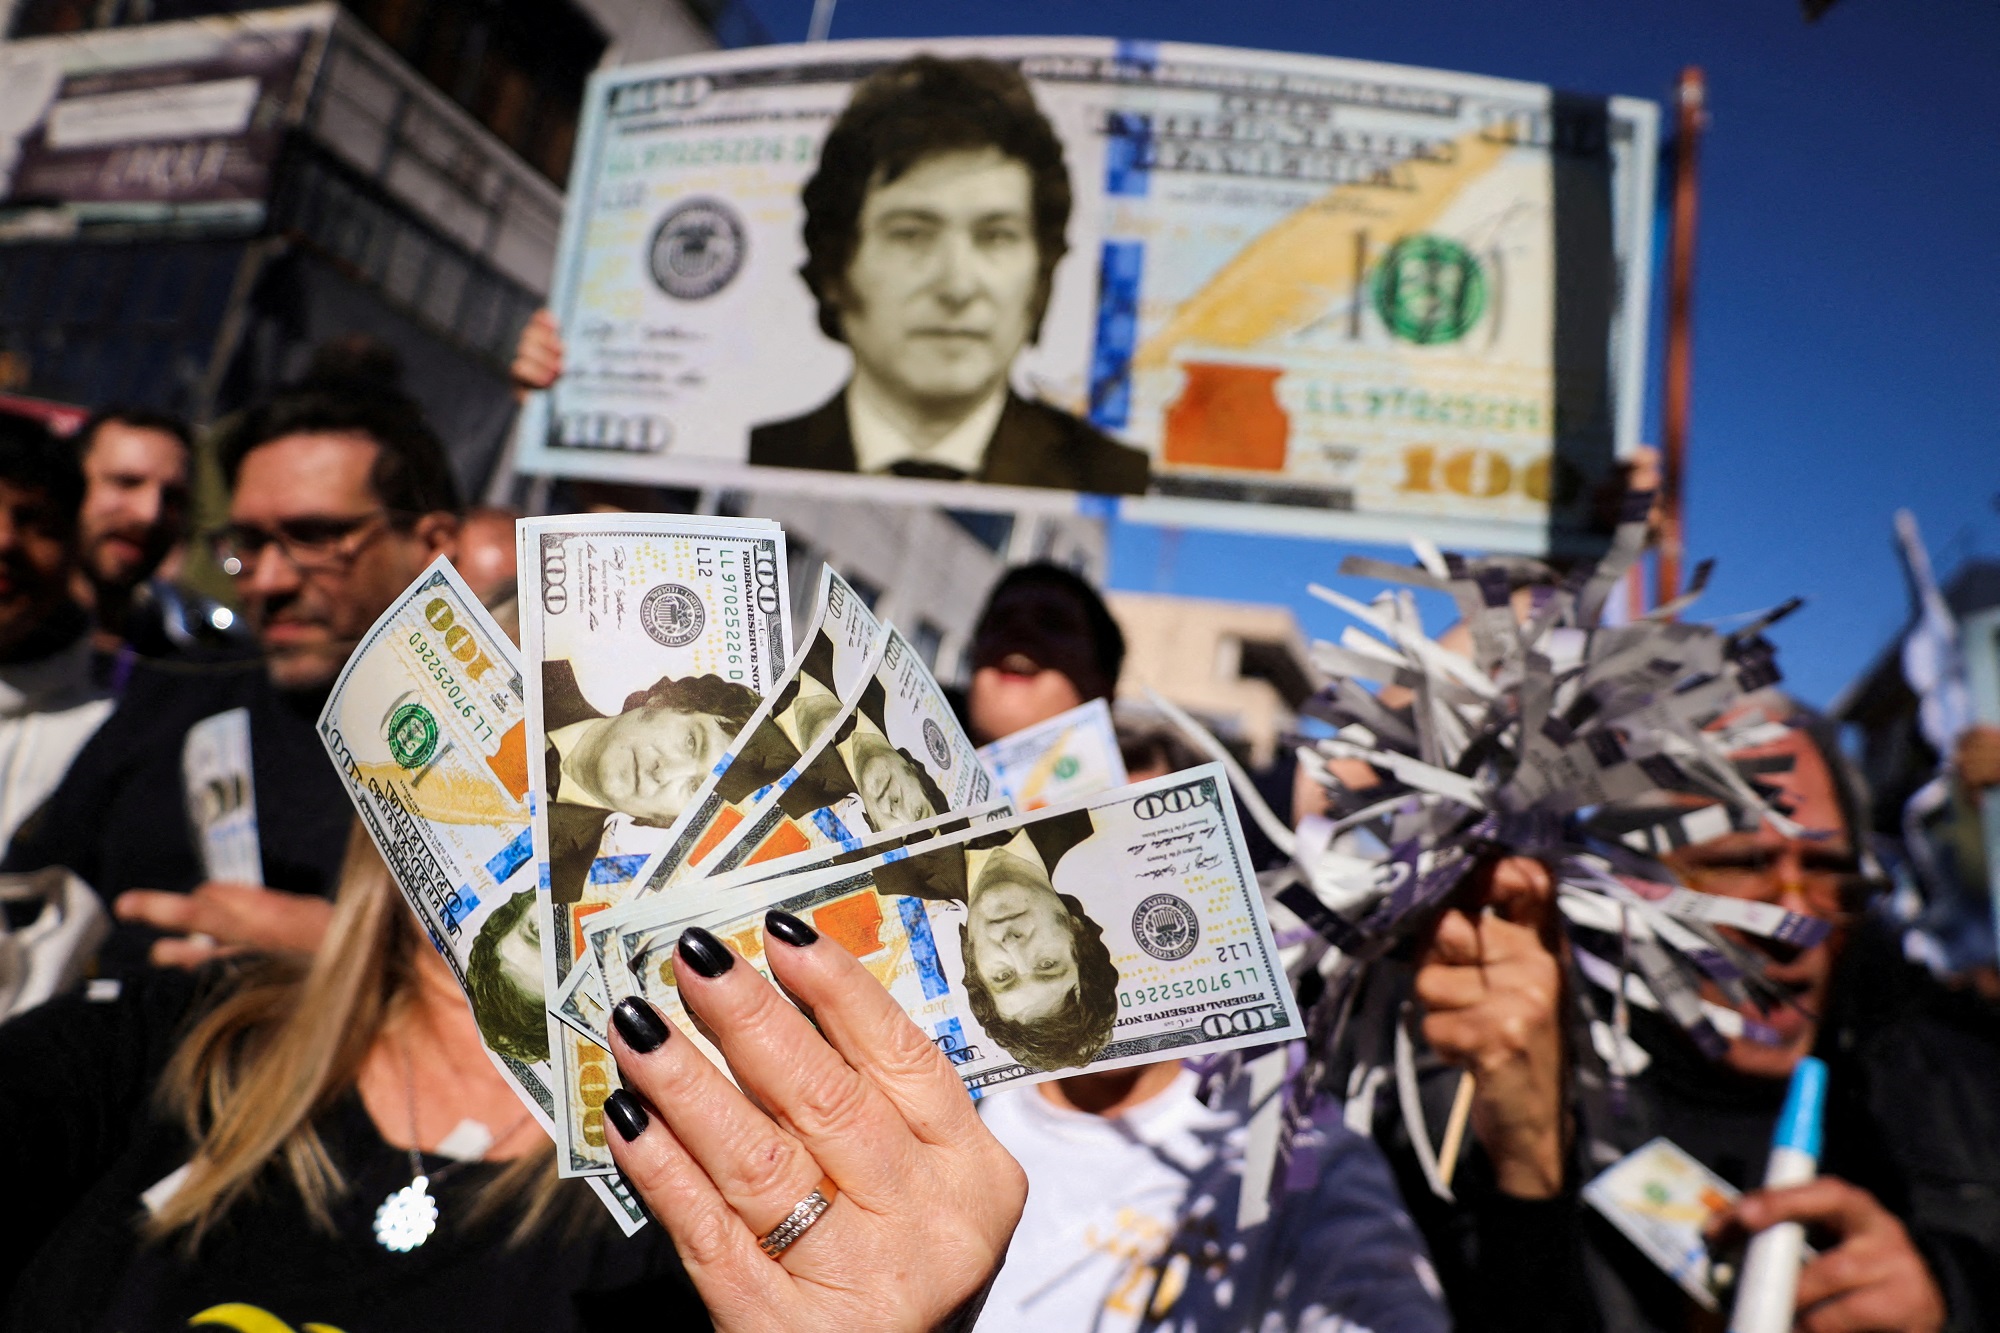 Χαβιέ Μιλέι: Ένας «αναρχο-καπιταλιστής» κατά του κατεστημένου στην Αργεντινή